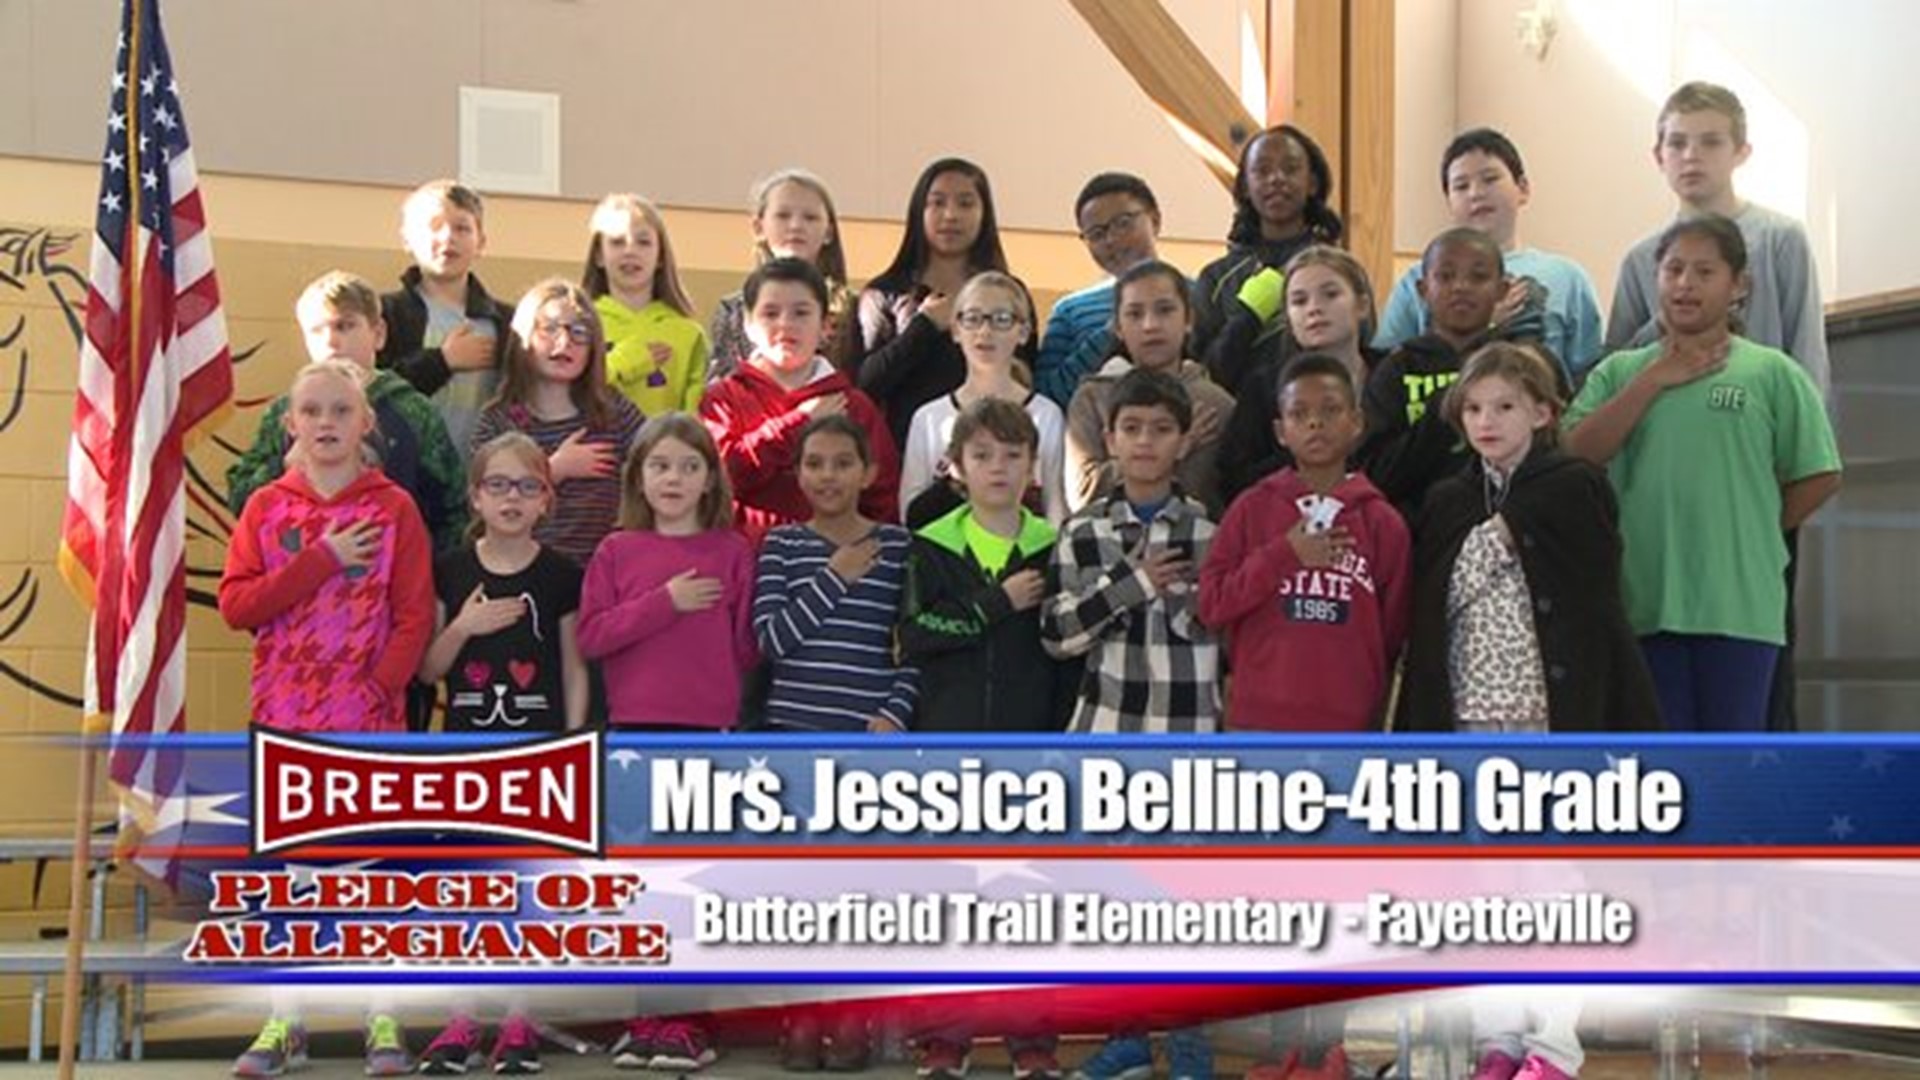 Butterfield Trail Elementary - Fayetteville, Mrs. Belline - Fourth Grade